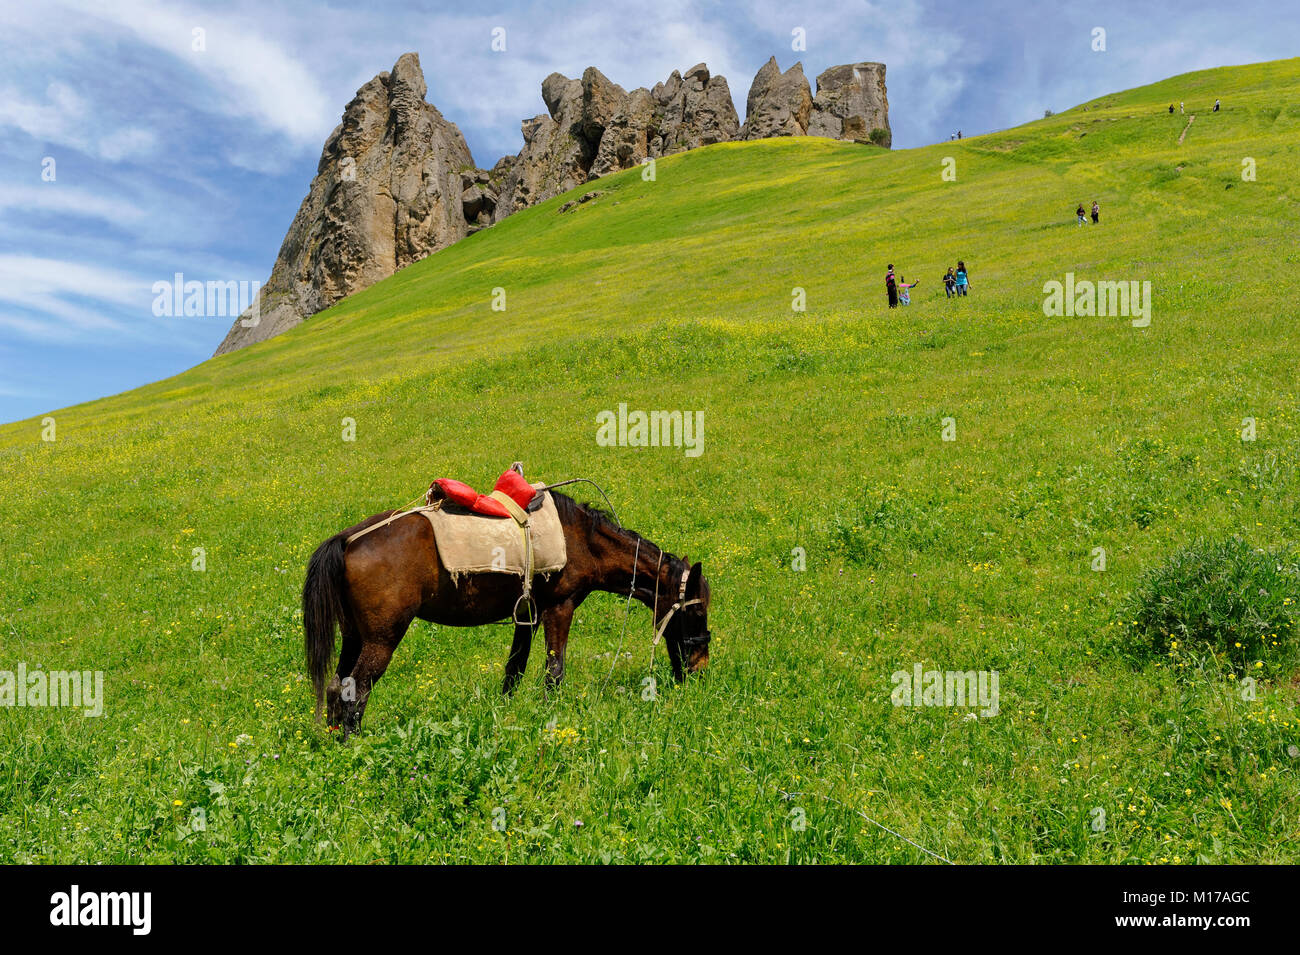 Une calèche près du doigt Besh Barmag ou cinq Mountain, près de Bakou, en Azerbaïdjan. Banque D'Images